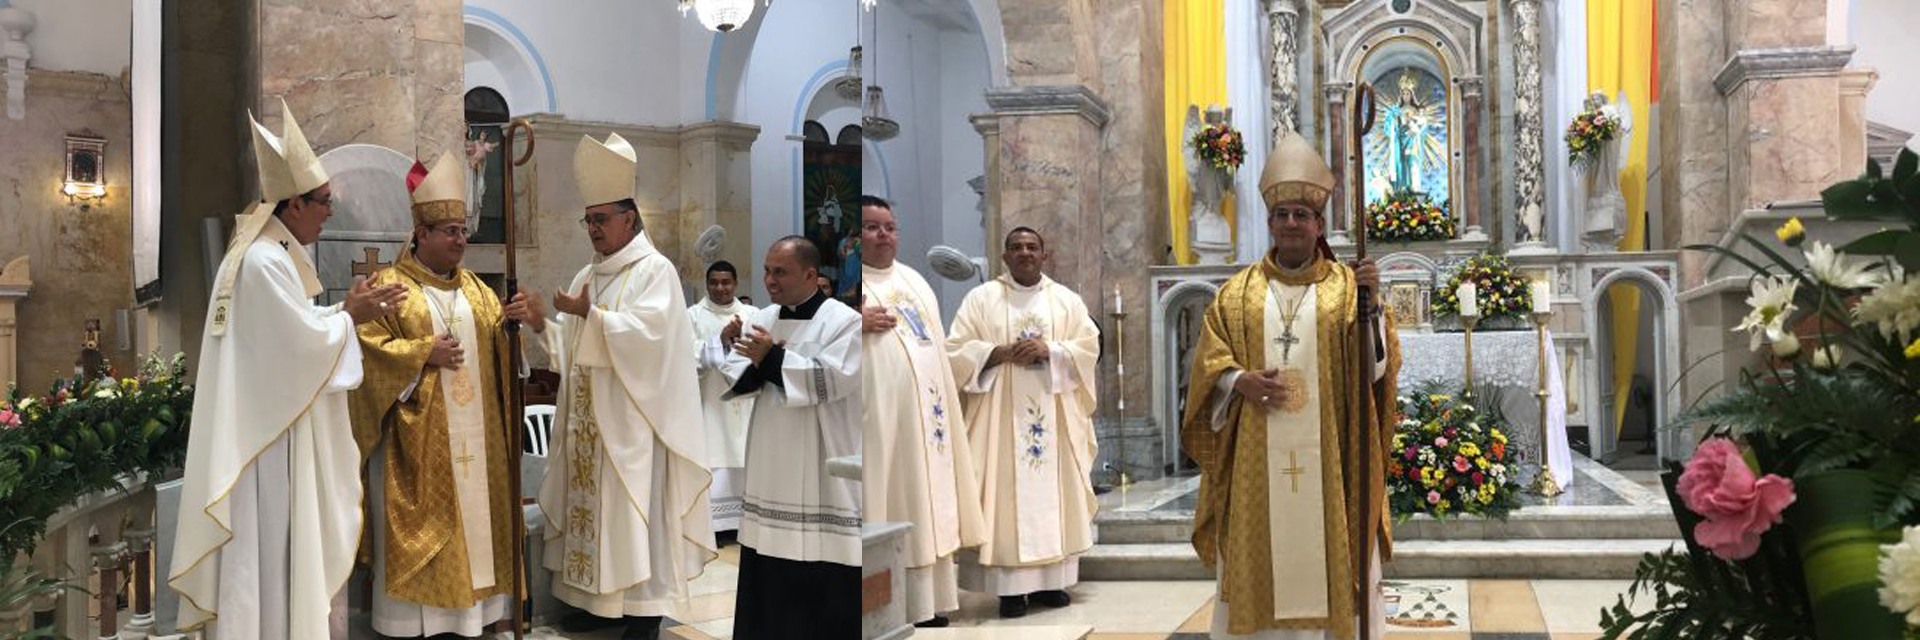 Monseñor Francisco Antonio Ceballos tomó posesión como nuevo obispo de la diócesis de Riohacha